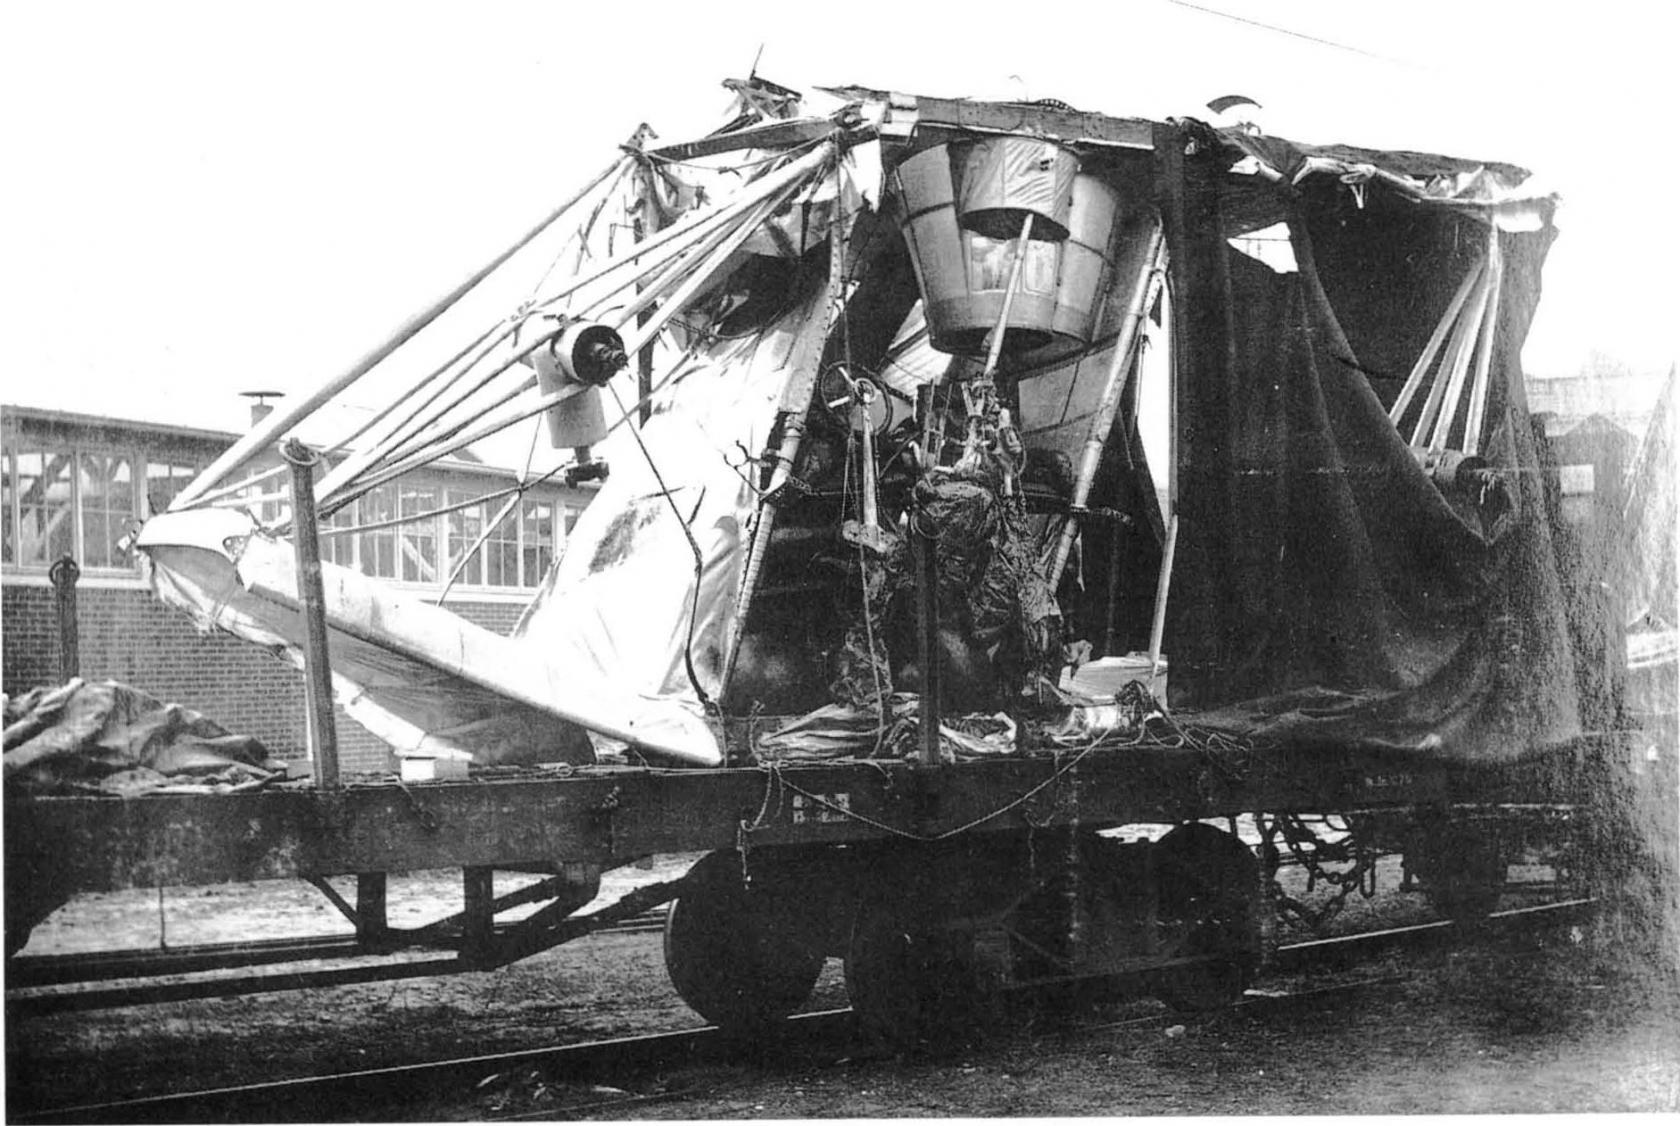 Показано разрушение SSW R.I из-за отсутствия зазора во время переводки по железной дороге. Среди обломков можно увидеть верхнюю пулеметную турель